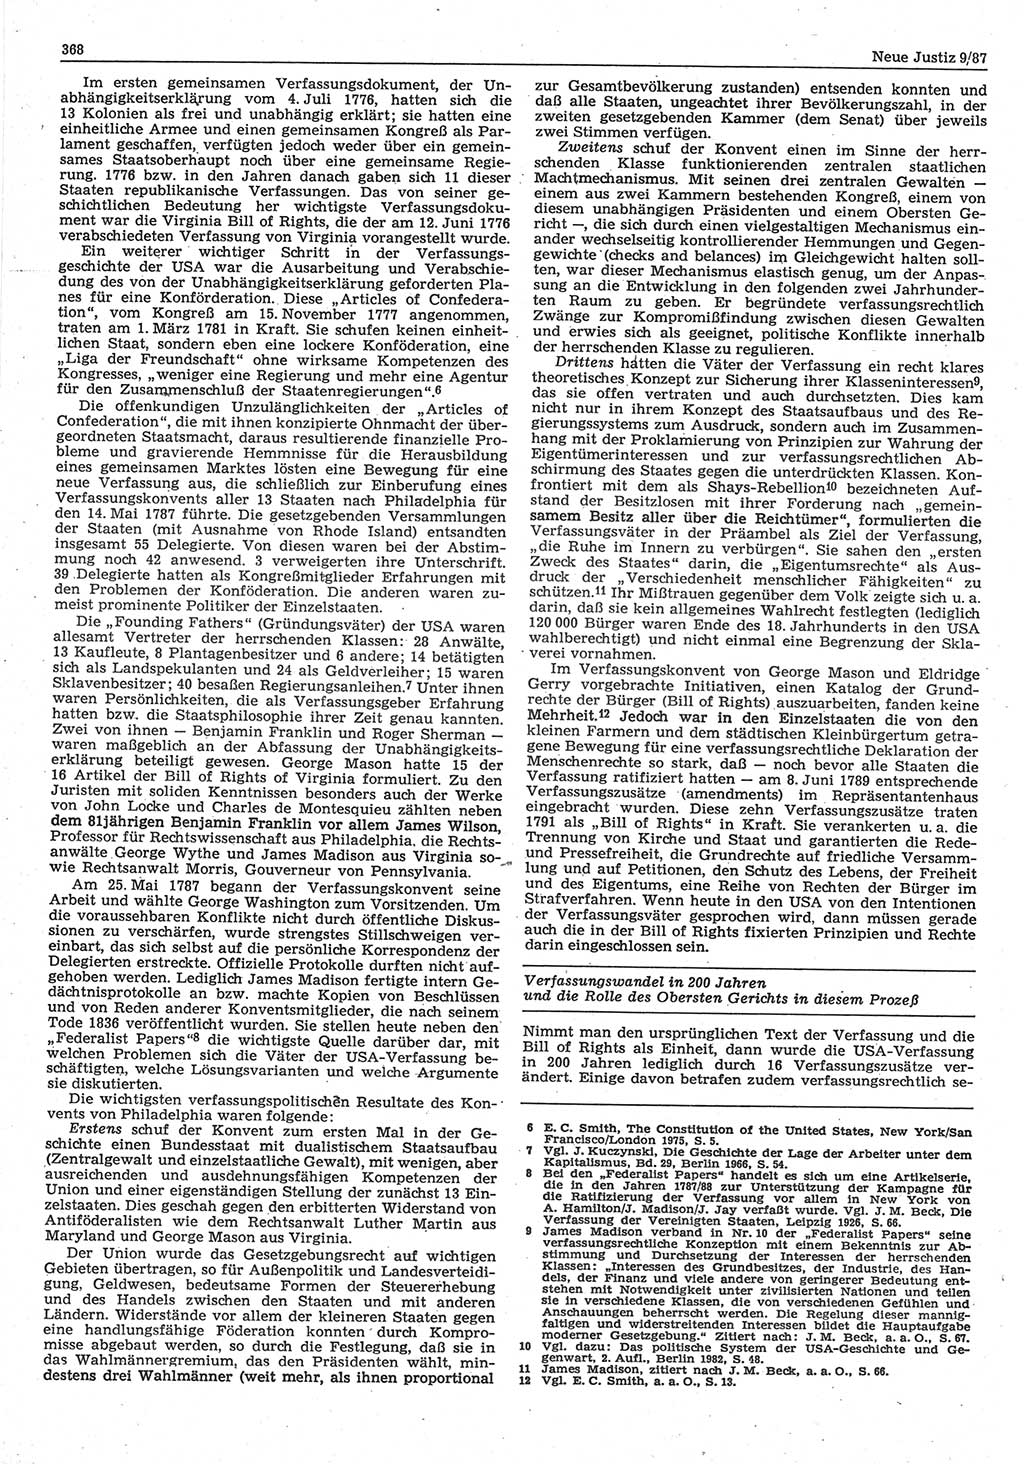 Neue Justiz (NJ), Zeitschrift für sozialistisches Recht und Gesetzlichkeit [Deutsche Demokratische Republik (DDR)], 41. Jahrgang 1987, Seite 368 (NJ DDR 1987, S. 368)